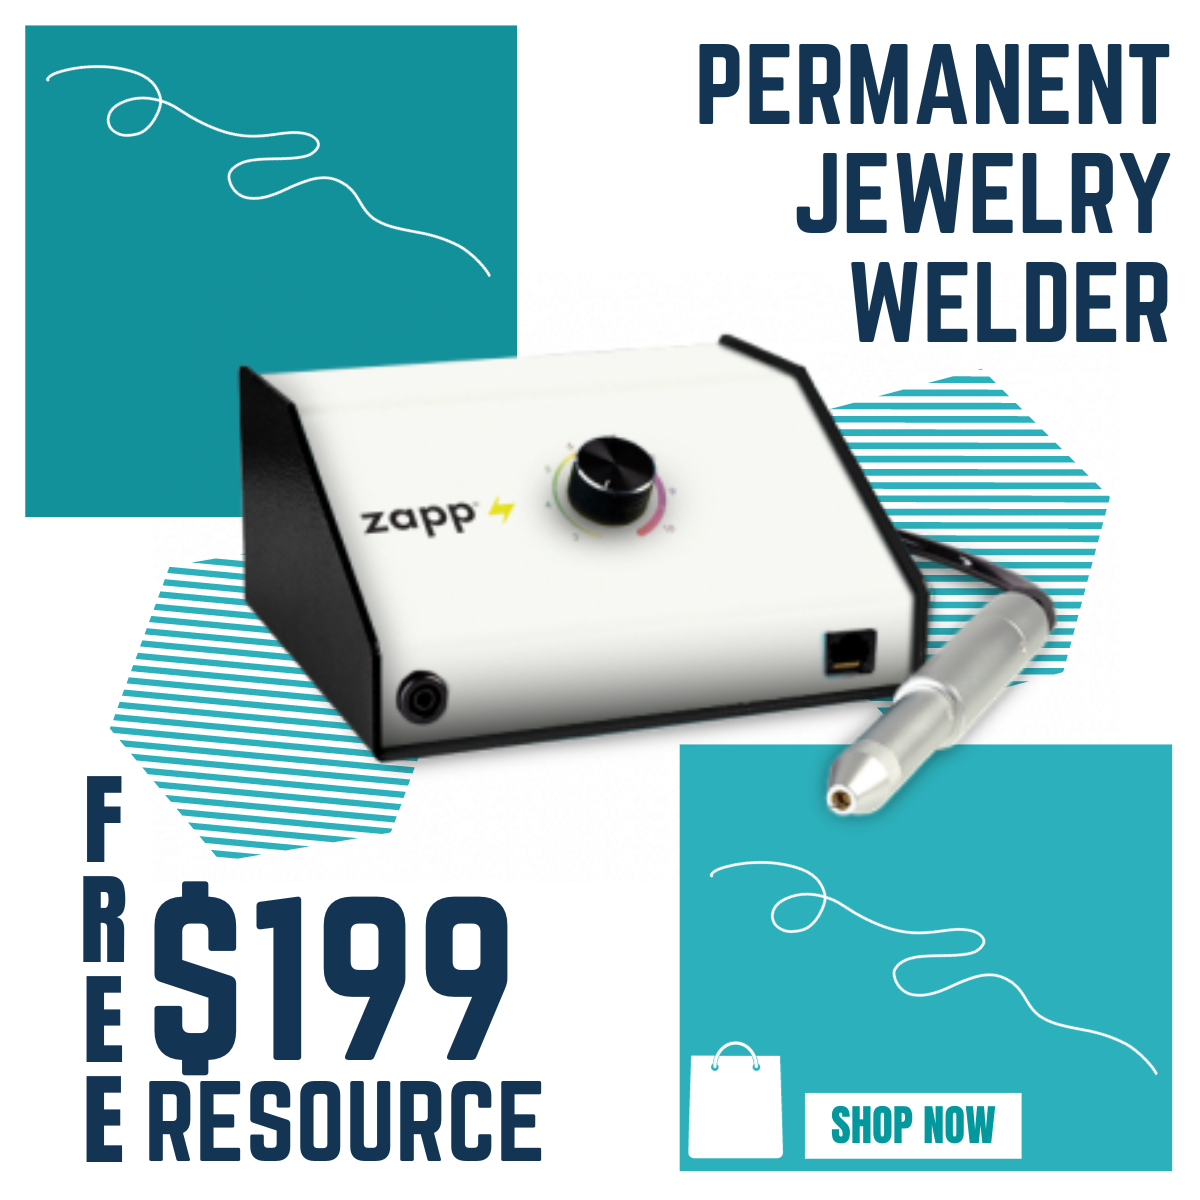 Permanent Jewelry starter kit for Beginners, Orion Mpulse Welder